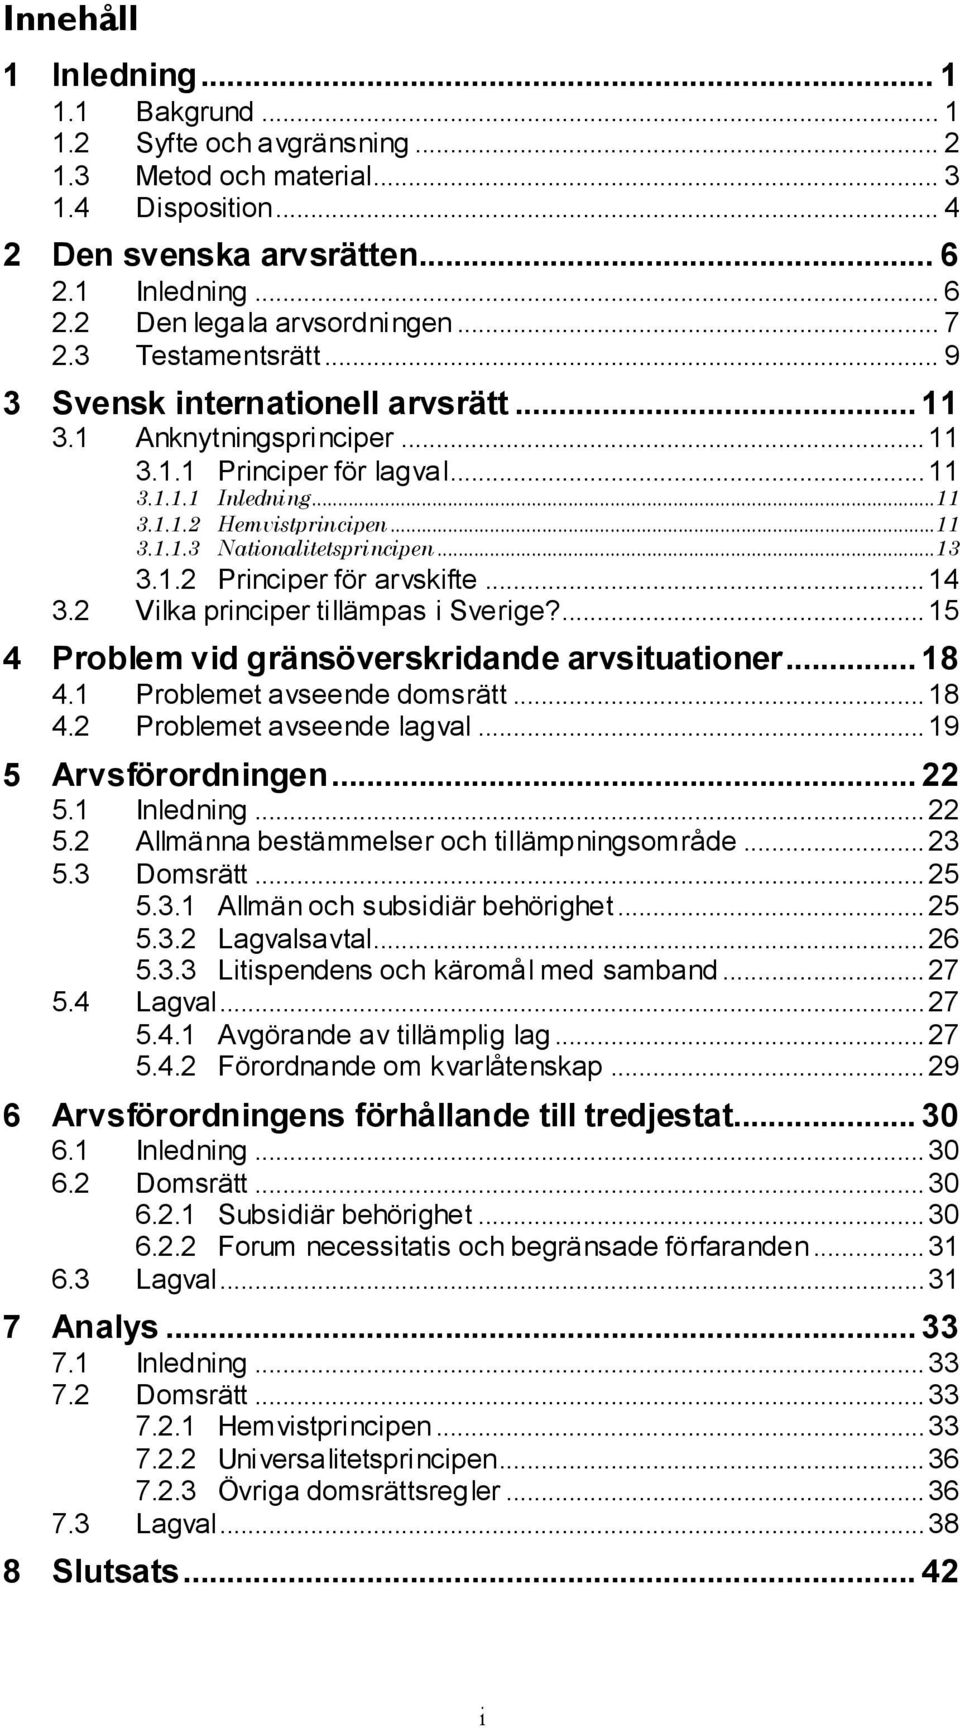 ..13 3.1.2 Principer för arvskifte... 14 3.2 Vilka principer tillämpas i Sverige?... 15 4 Problem vid gränsöverskridande arvsituationer... 18 4.1 Problemet avseende domsrätt... 18 4.2 Problemet avseende lagval.